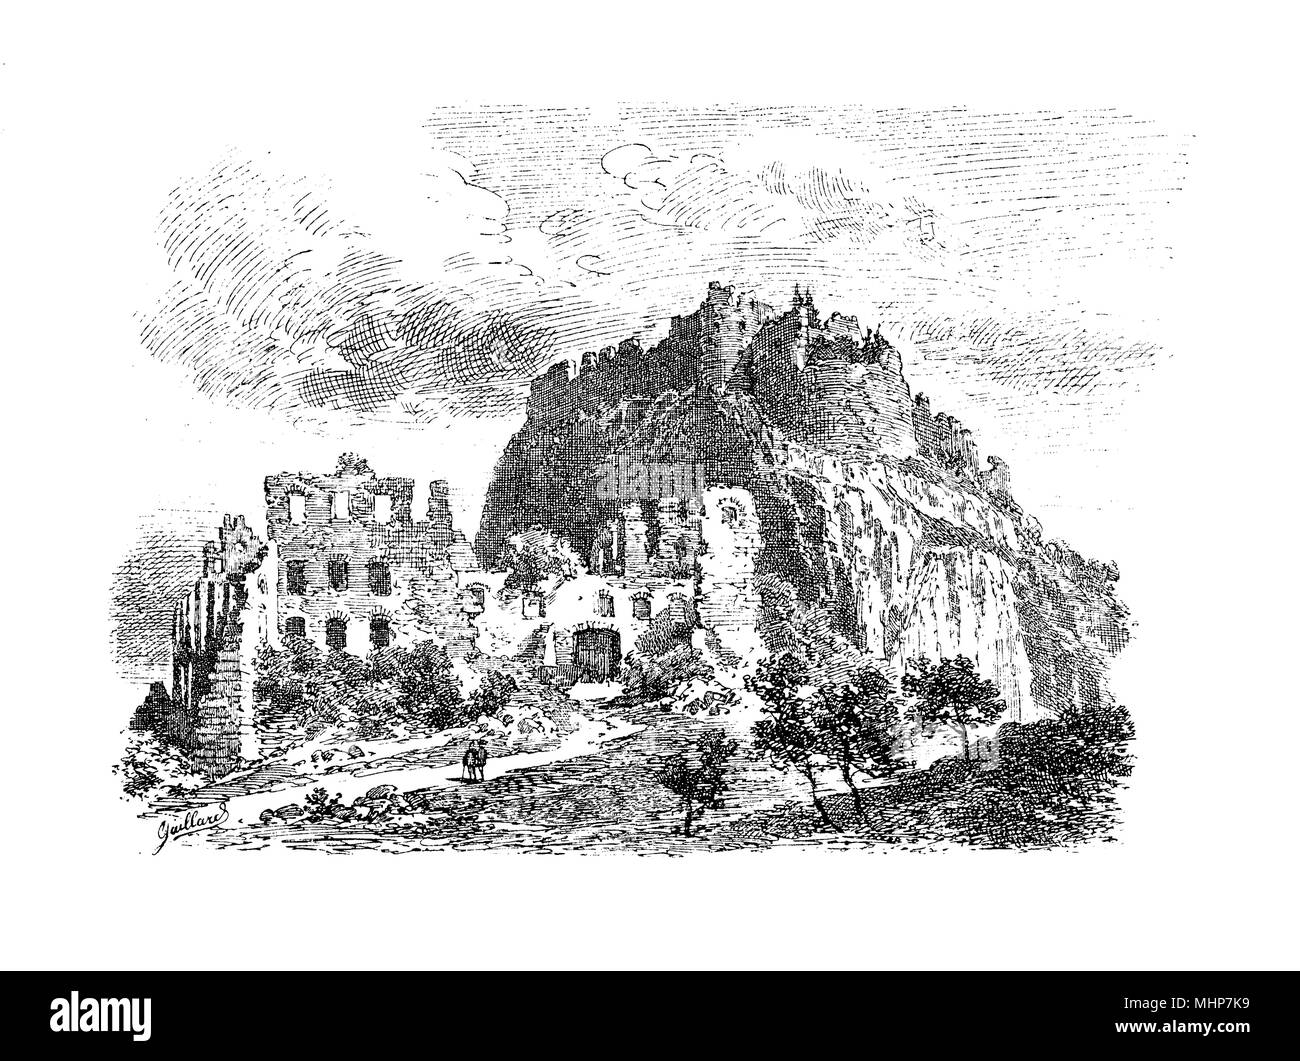 L'Allemagne, la gravure des ruines vintage de Hohentwiel fortress construit en l'an 915 et 5 fois détruite pendant la Guerre de Trente Ans, en XVII siècle Banque D'Images